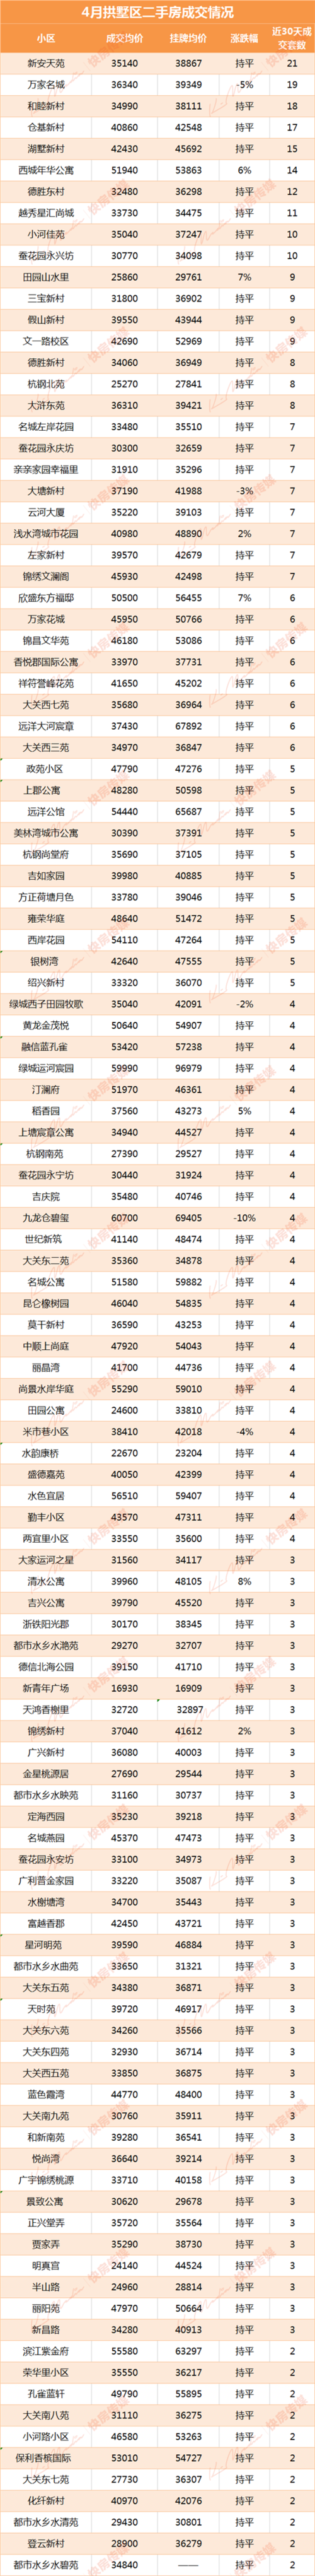 杭州1144个二手房小区最新房价曝光!绝大多数与上月持平!